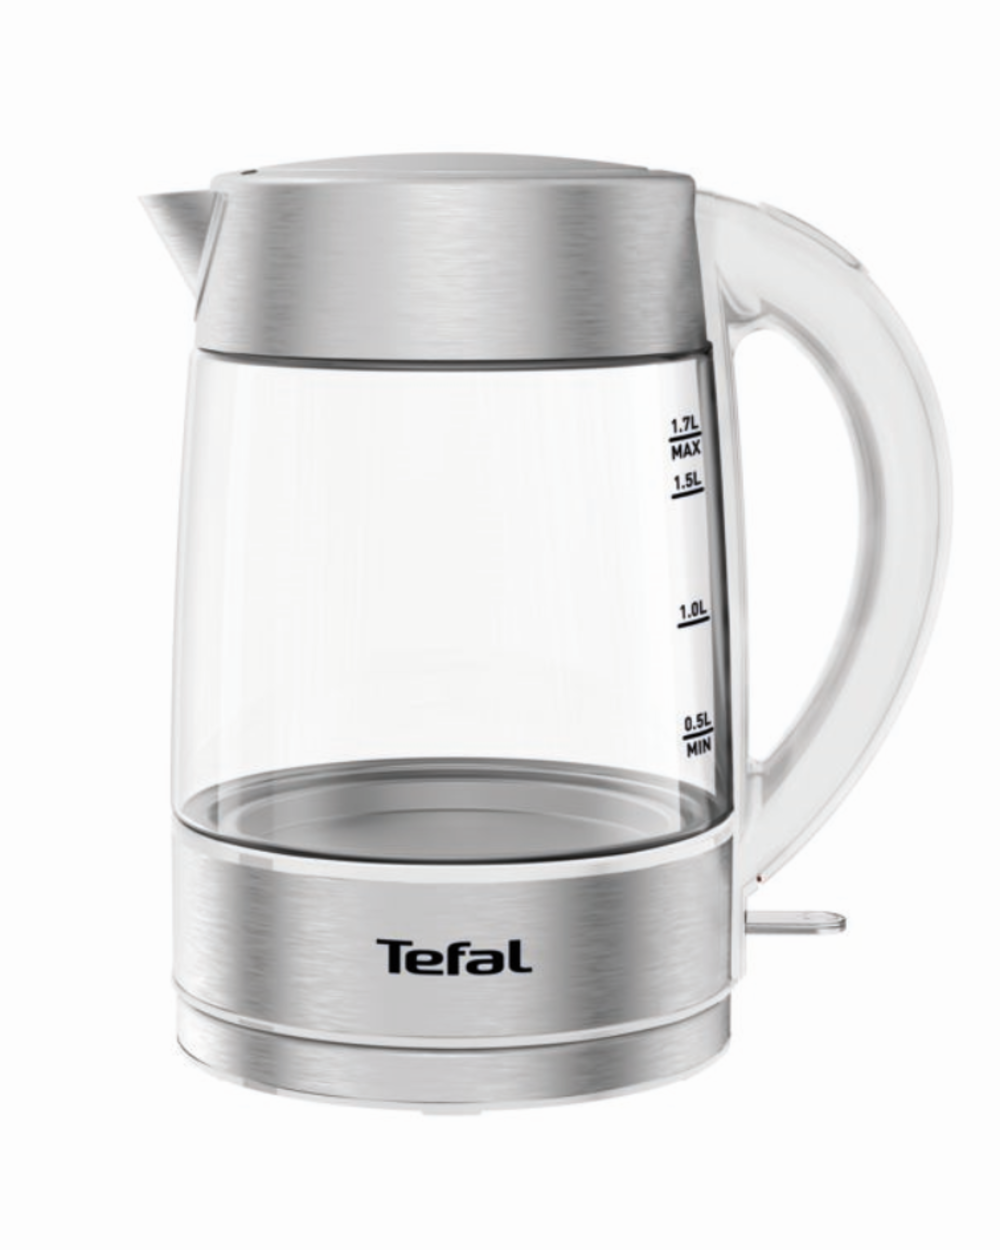 Чайник электрический Tefal KI772138 1.7 л прозрачный, белый чайник заварочный teco tc 204 800 мл из стекла с ситом и крышкой из нержавеющей стали